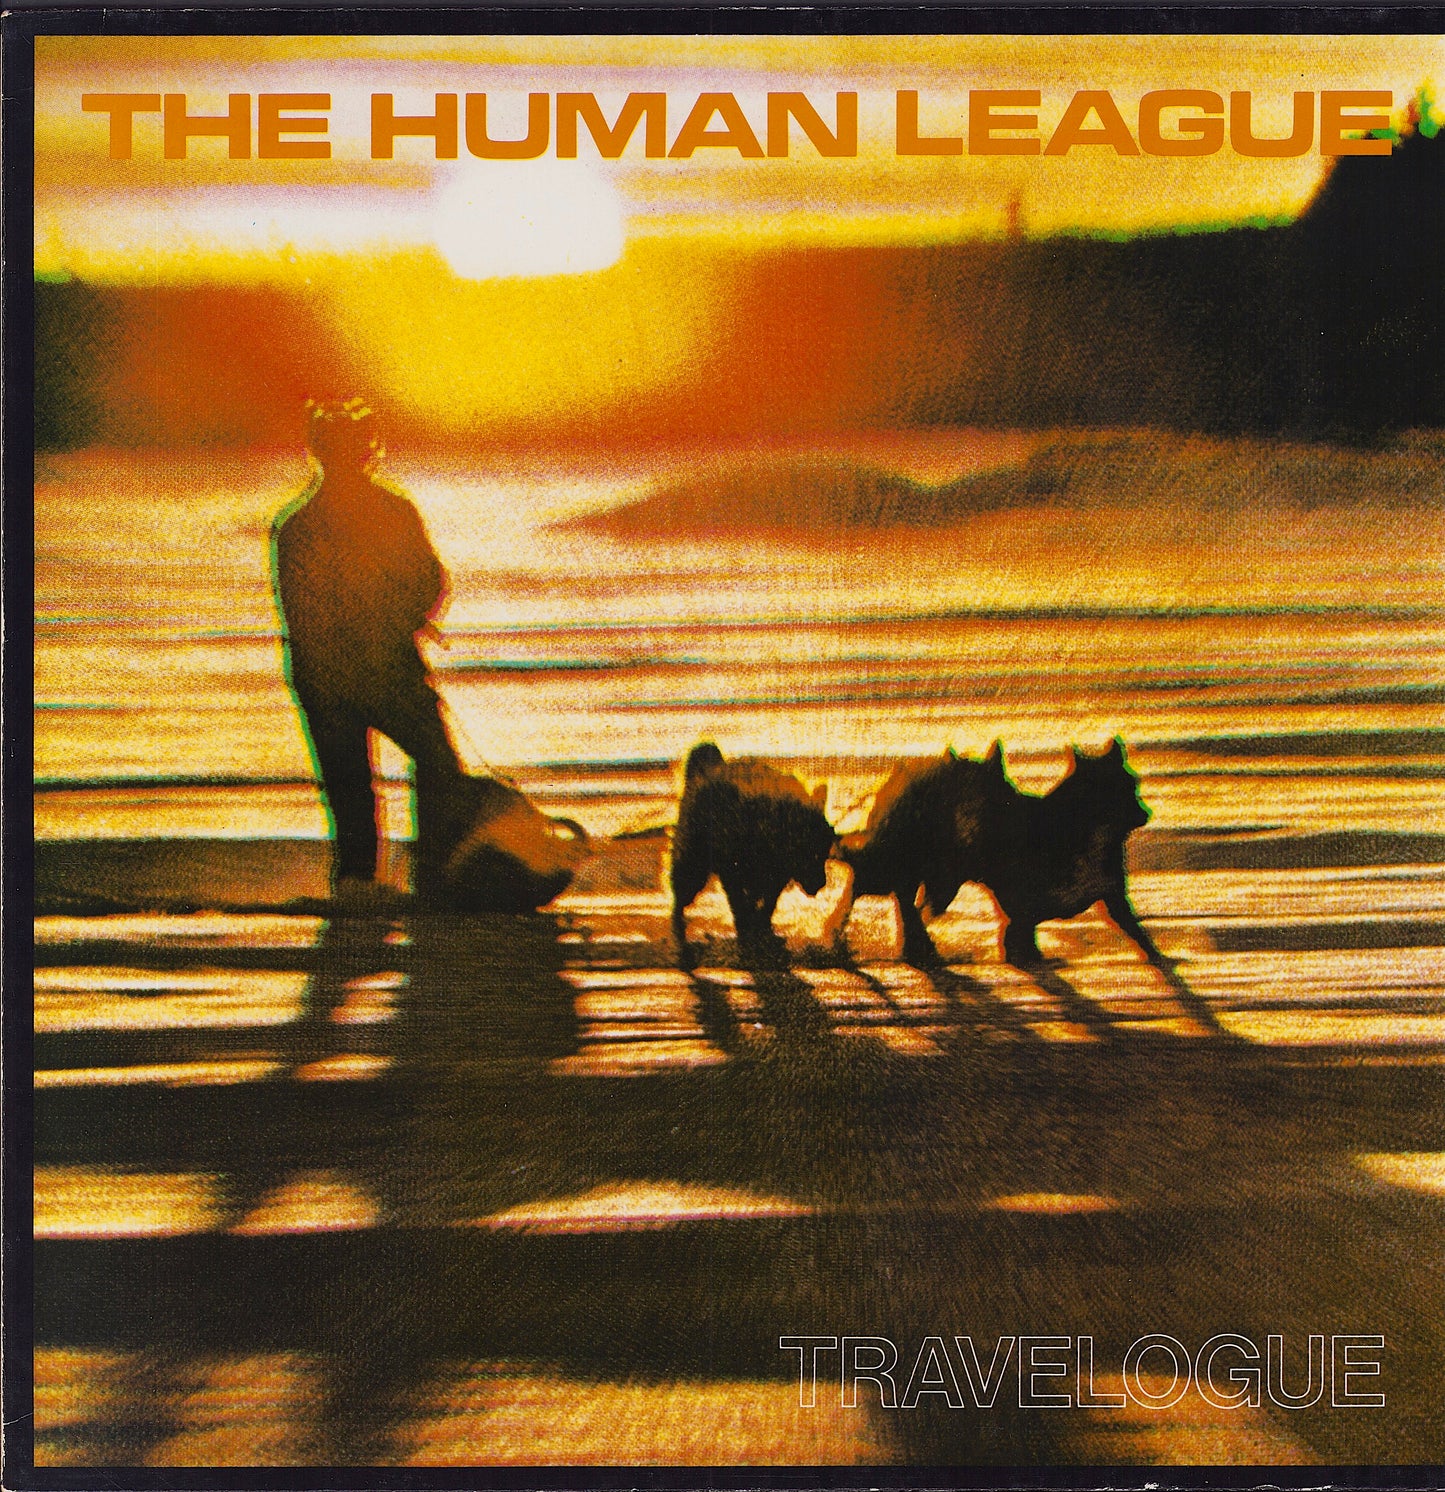 The Human League ‎- Travelogue (Vinyl LP)